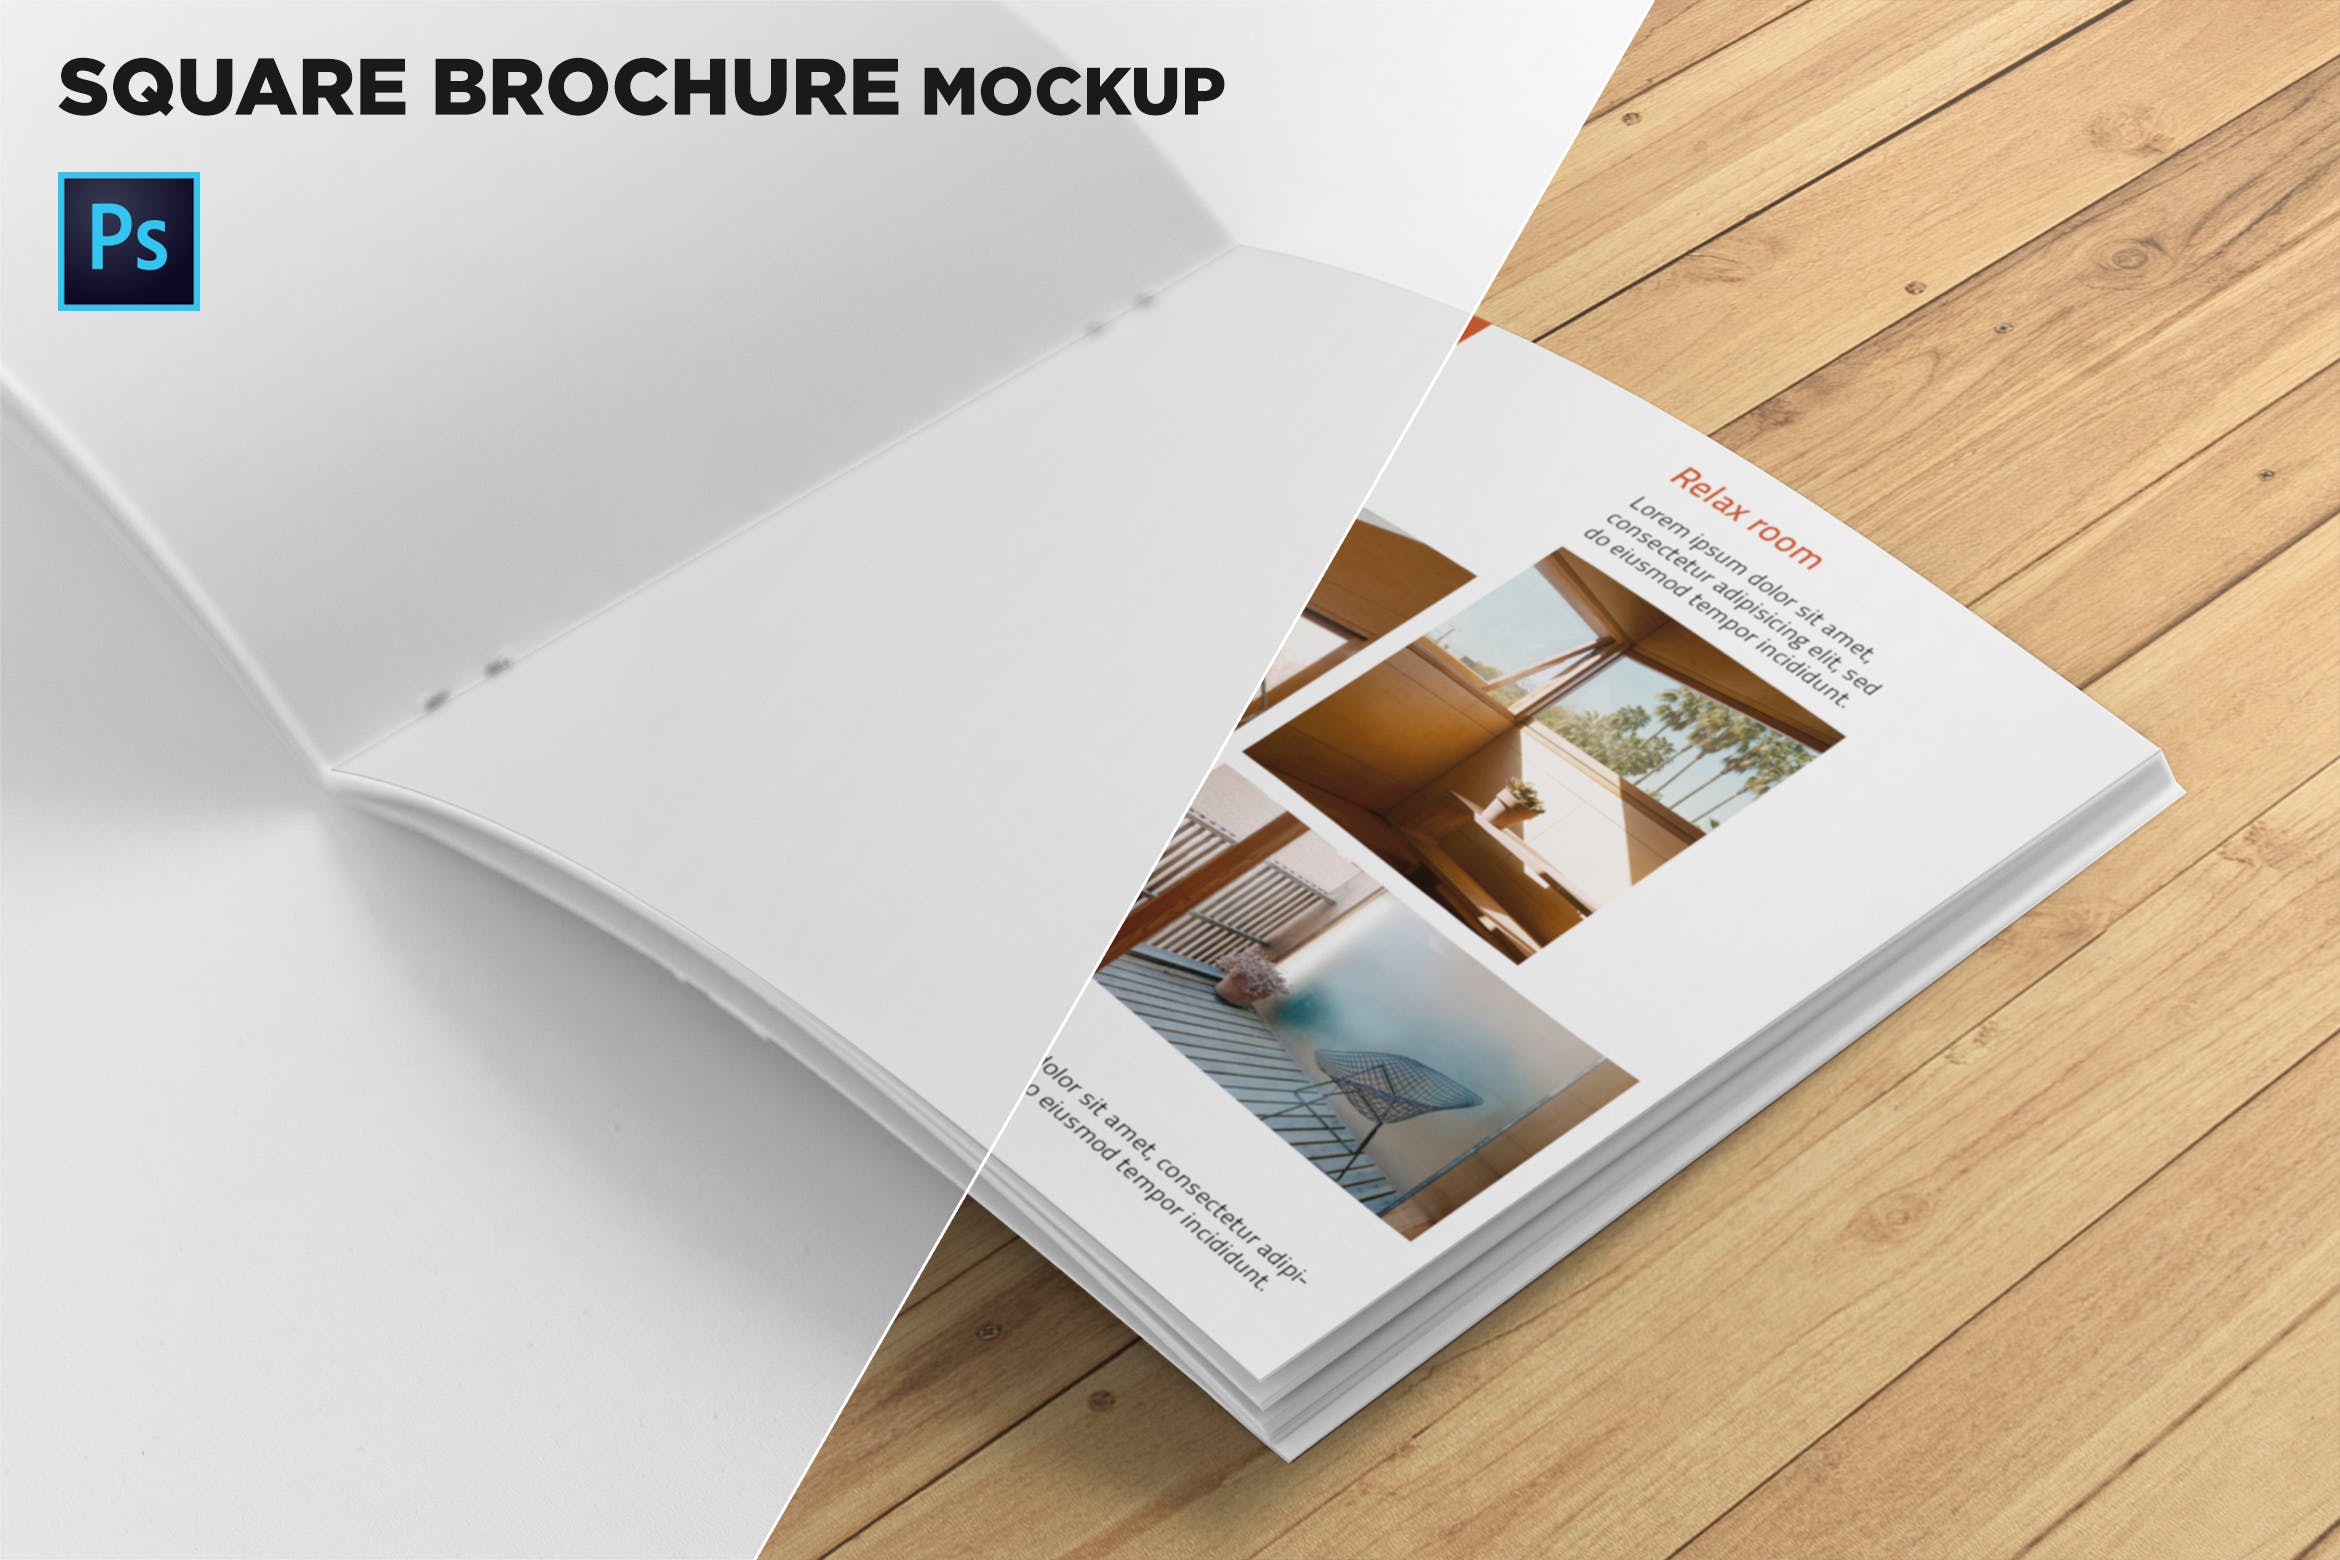 方形画册产品手册右页特写效果图样机第一素材精选 Square Brochure Mockup Closeup on Right Page插图